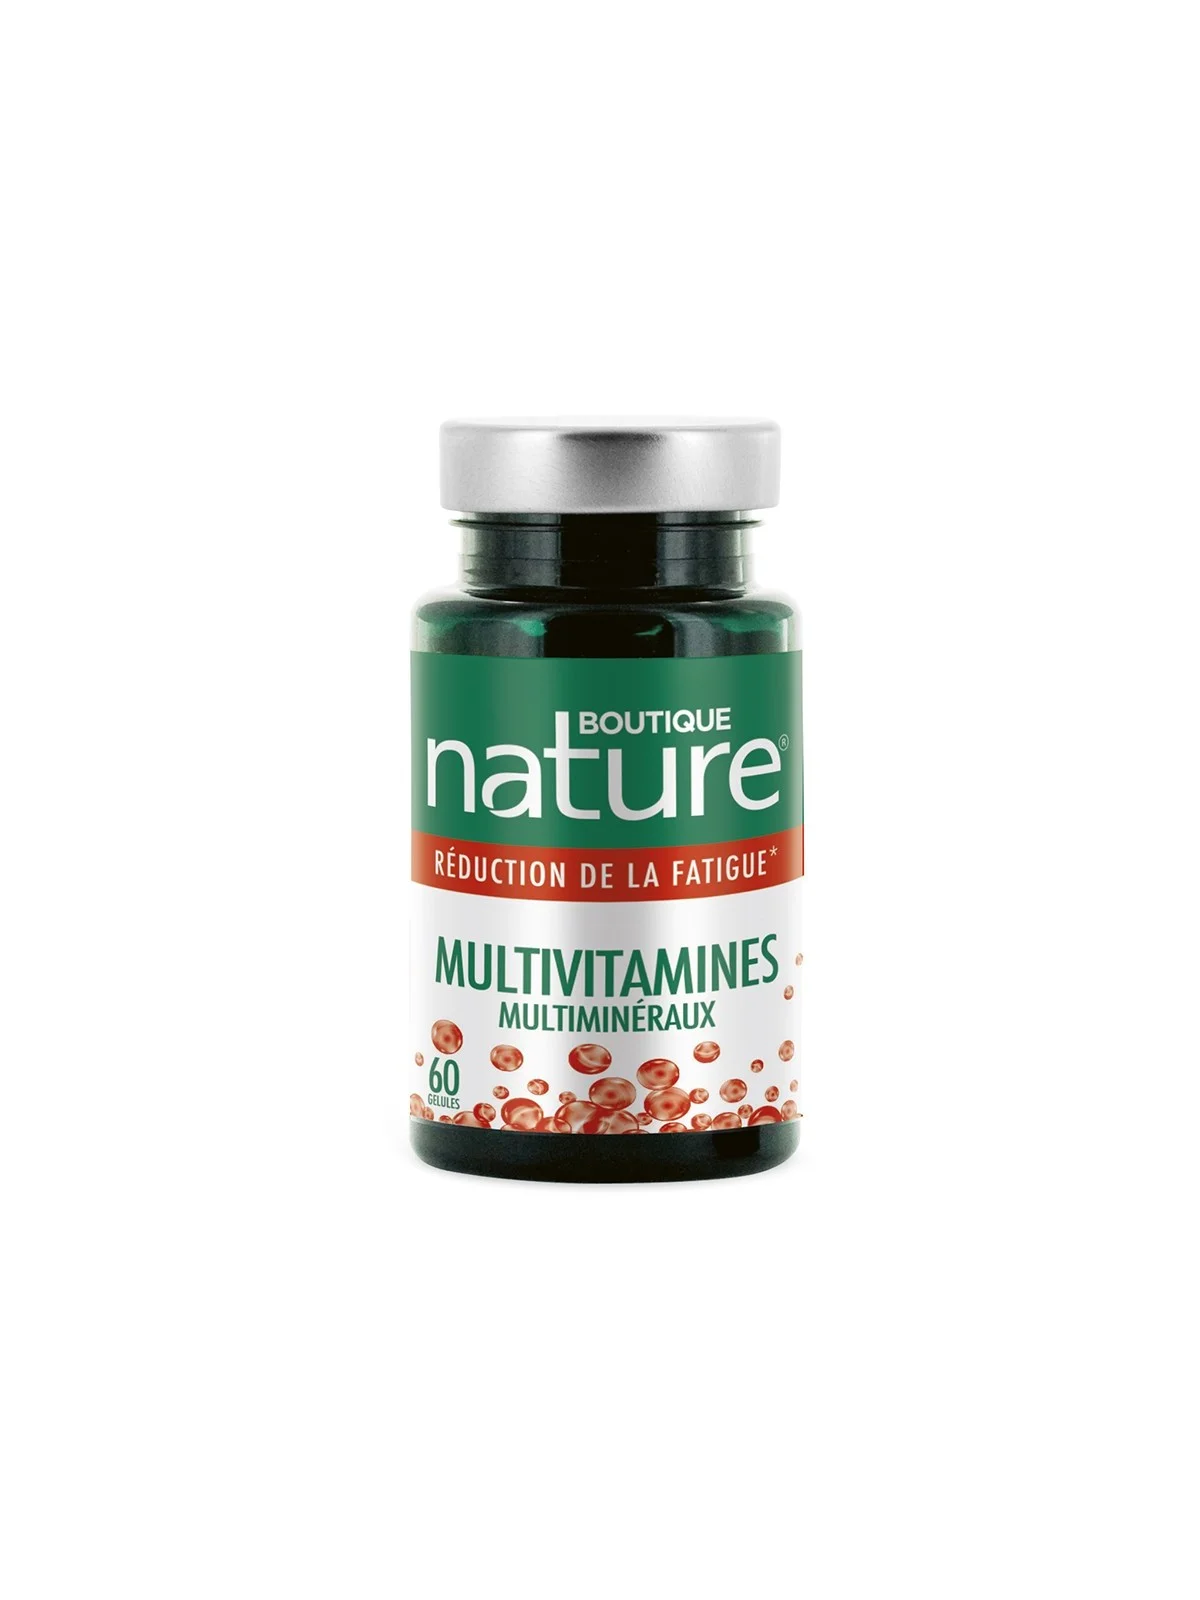 Multivitamines Multiminéraux Tonus et Vitalité Boutique Nature